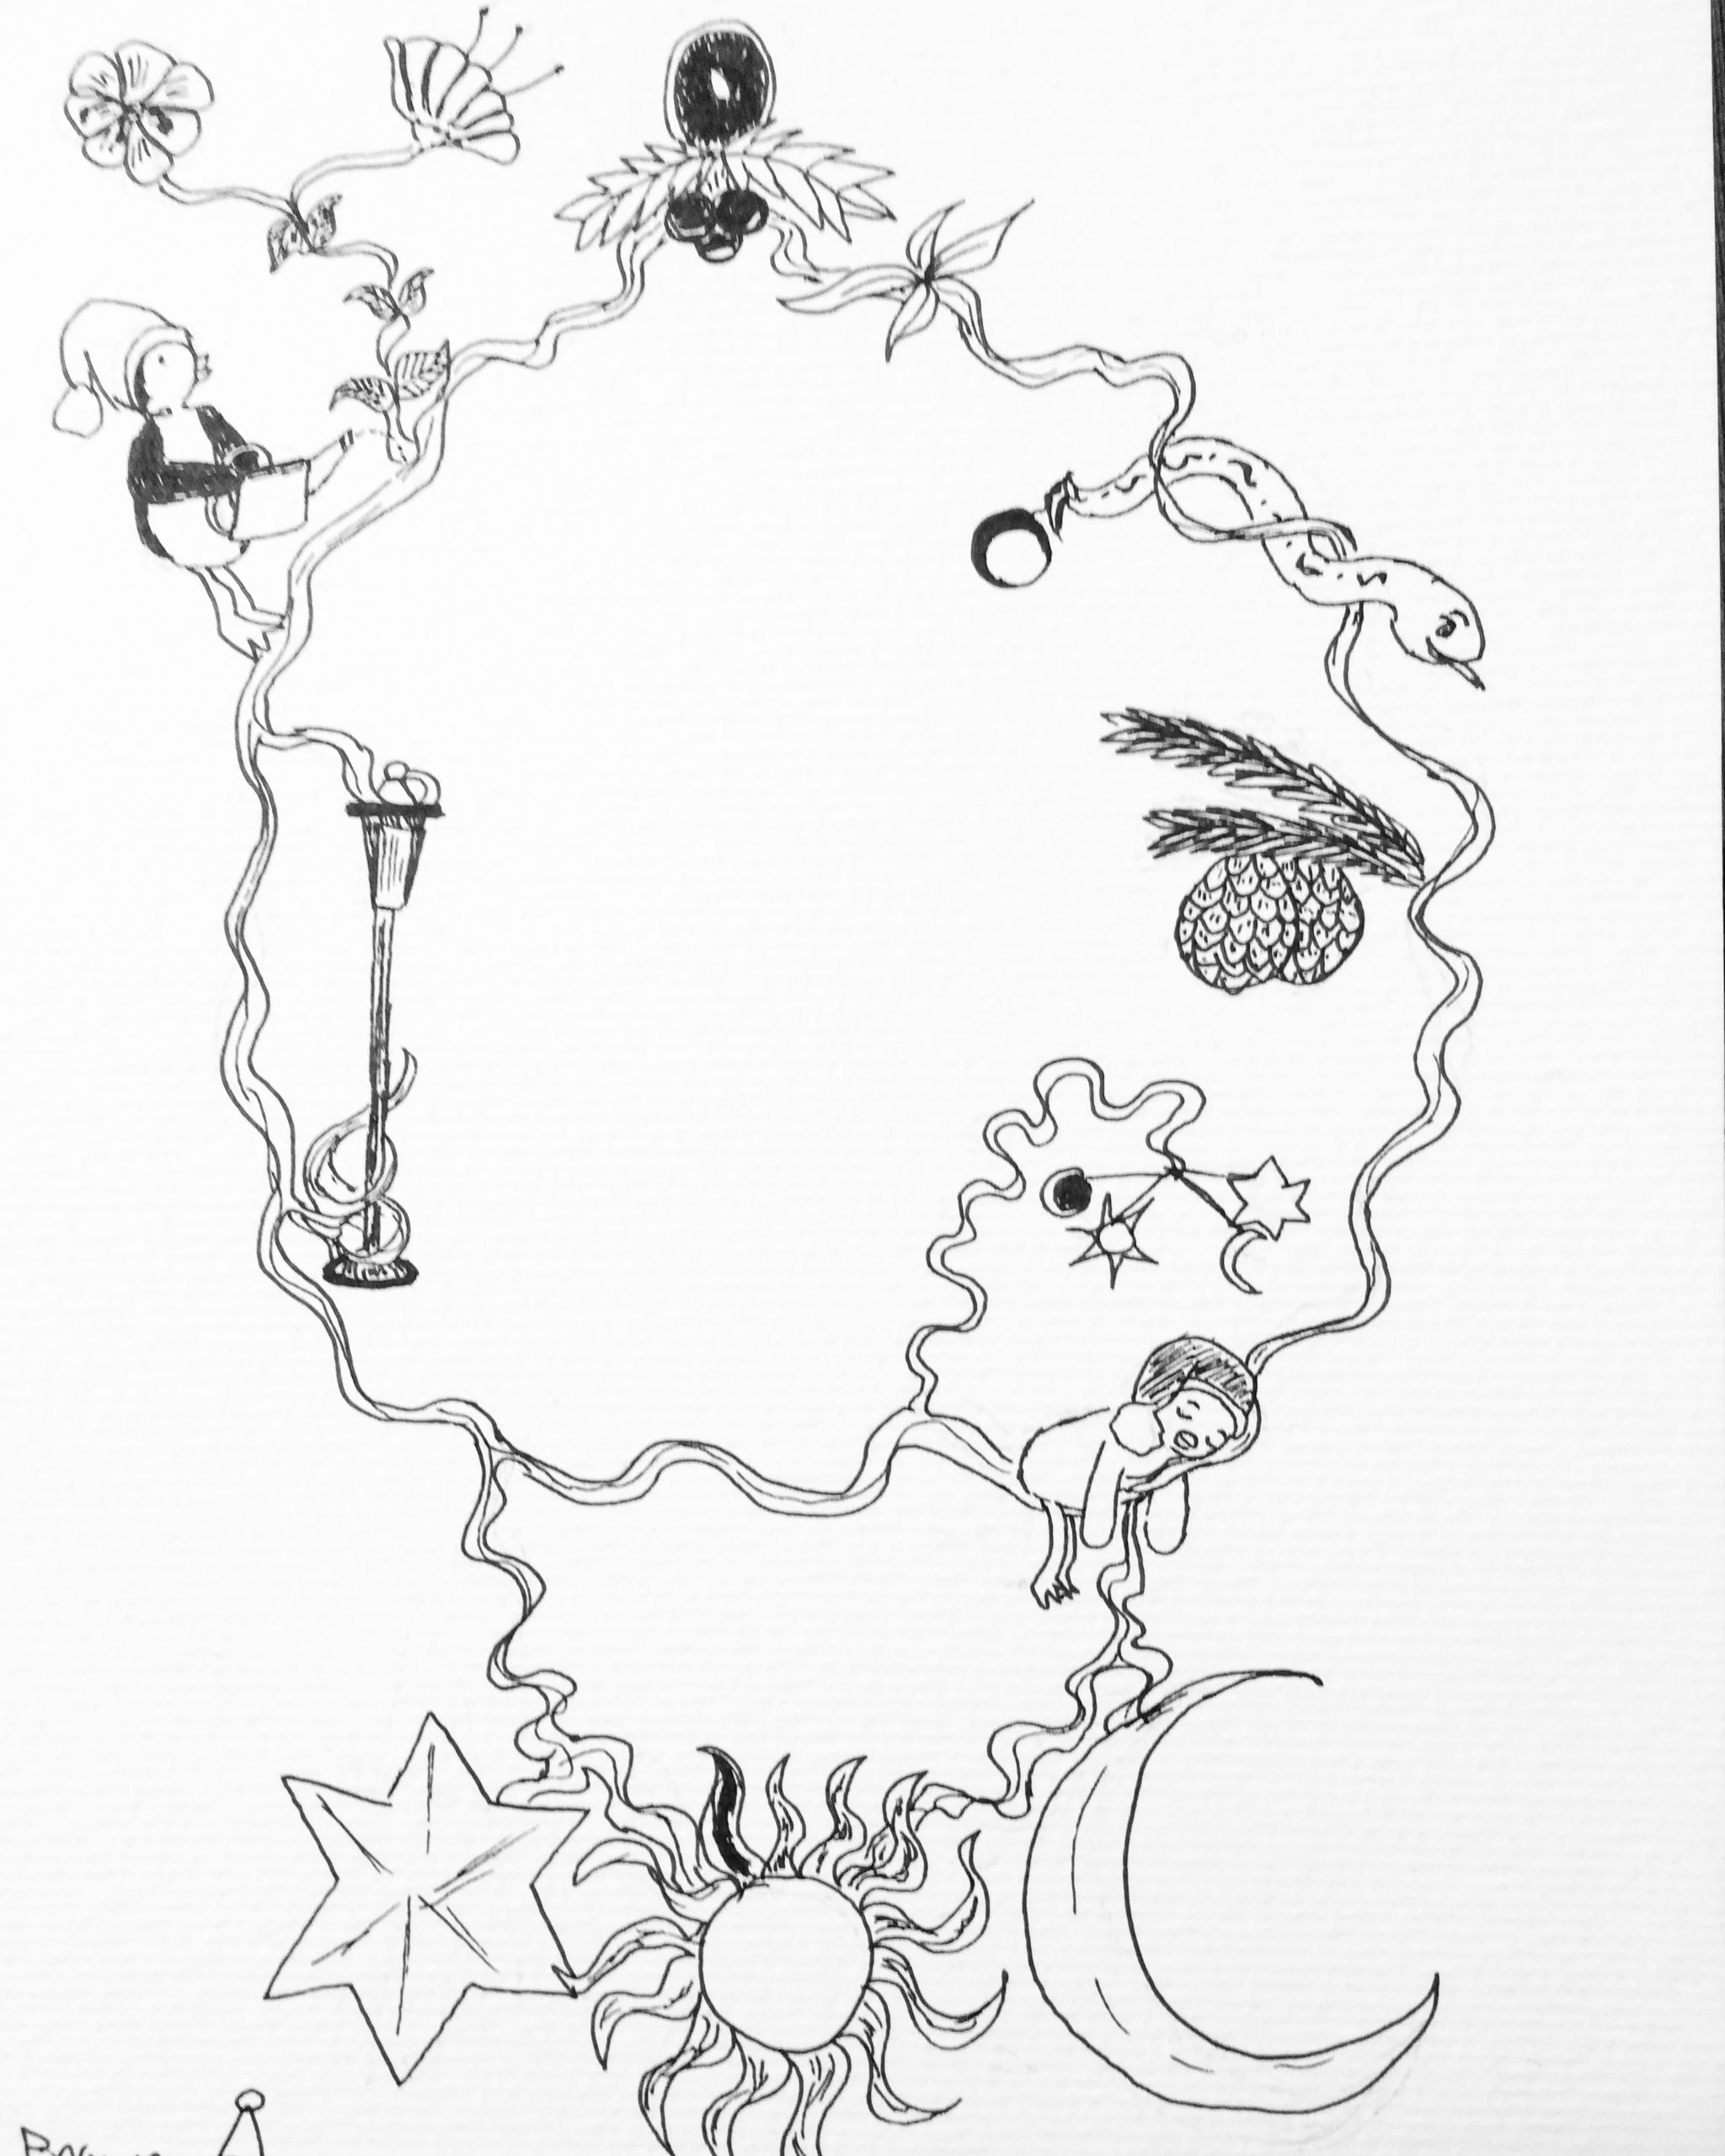 Inktober 2019: dessin sur le thème "ornament" où j'ai représenté une décoration agrémentée de divers éléments graphiques.